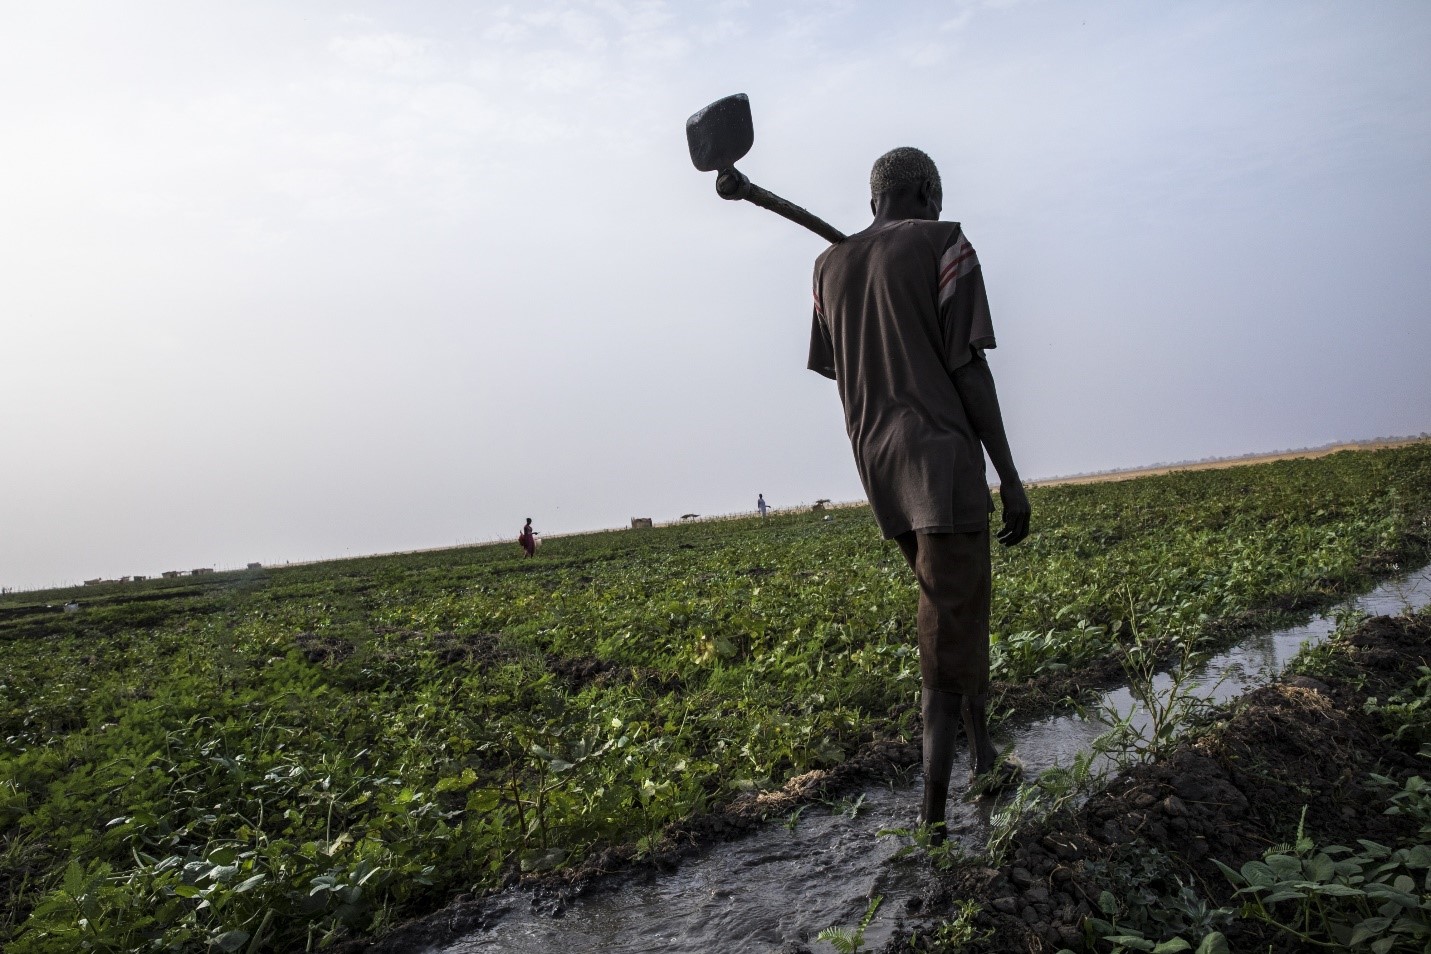 أحد صغار المزارعين يروي حقل الخضراوات الذي يمتلكه في ولاية بحر الغزال، جنوب السودان. صورة: برنامج الأغذية العالمي/جابرييل فيفاكوا